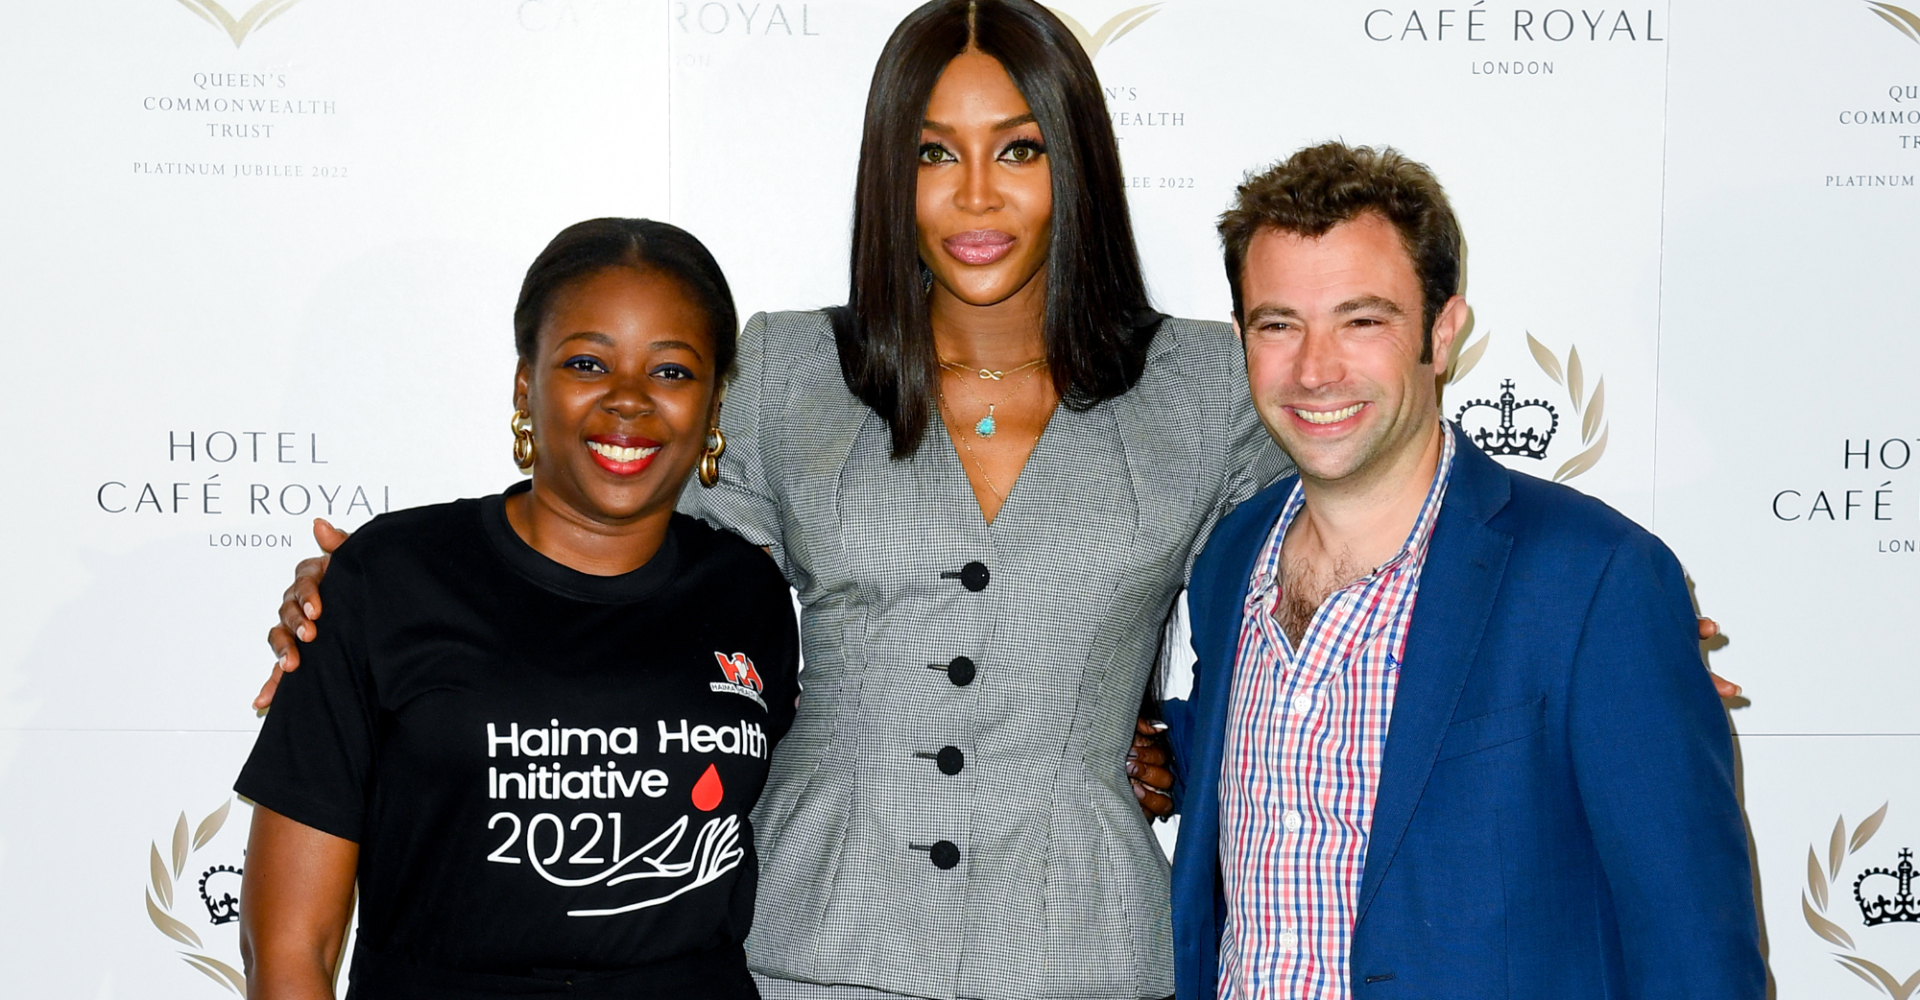 Naomi Campbell joins QCT as global ambassador